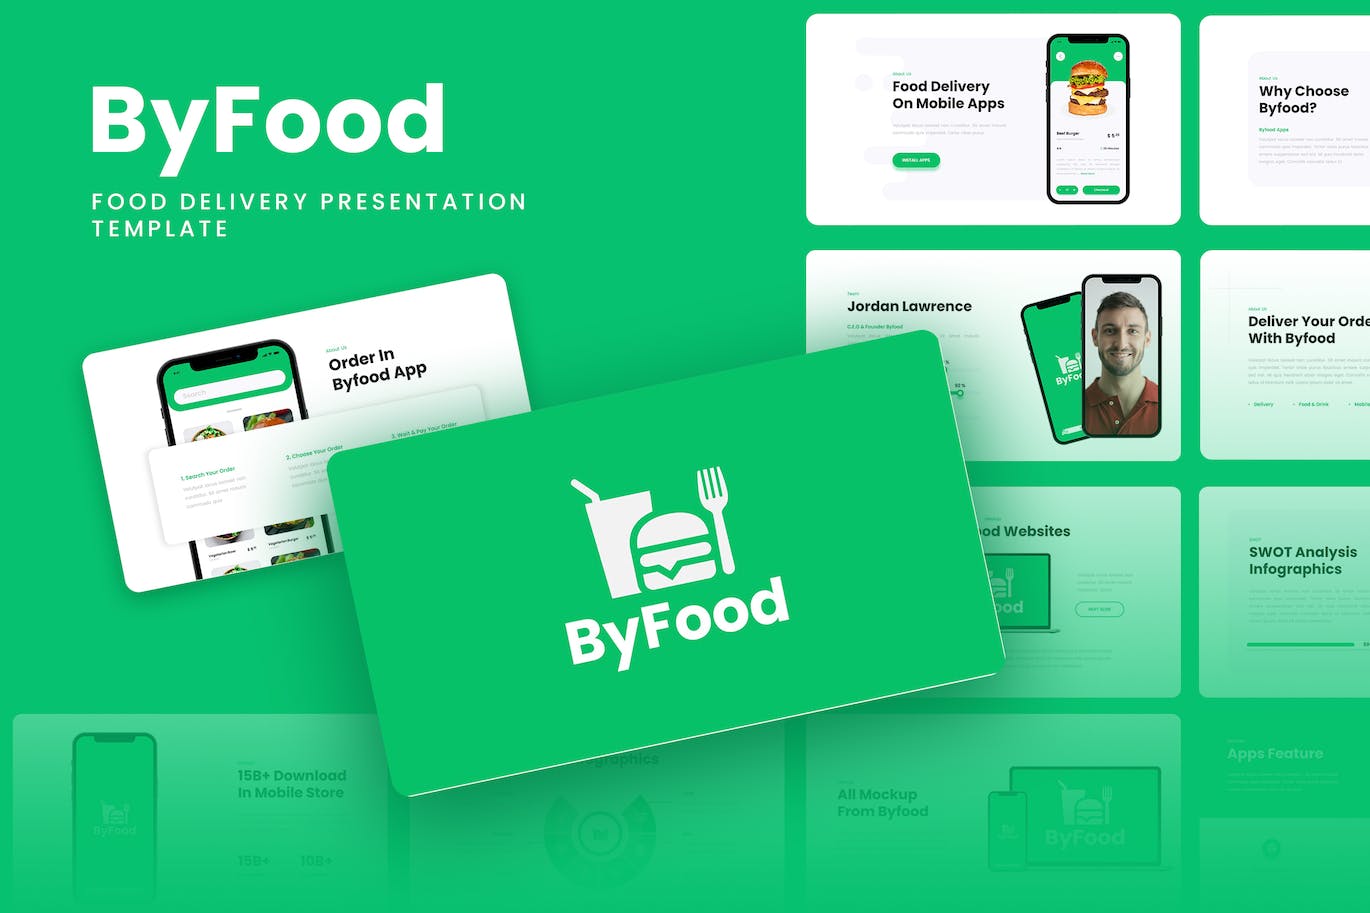 食品配送应用程序谷歌幻灯片模板下载 Byfood – Food Delivery Google Slides Template 幻灯图表 第1张